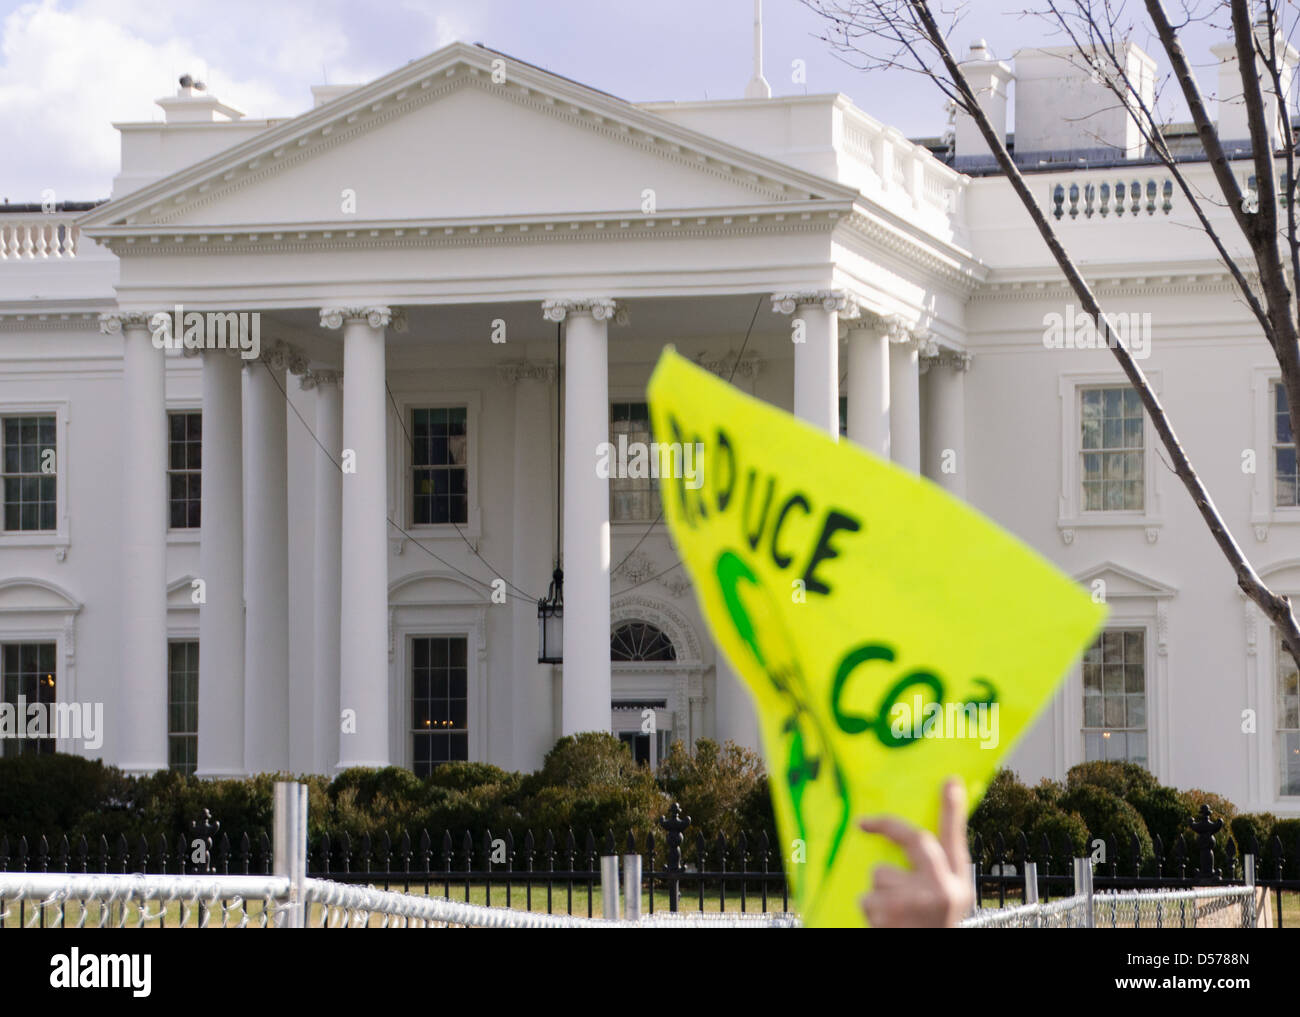 Un manifestant de l'environnement leurs vagues affiche à l'extérieur de la Maison blanche au cours d'une manifestation à Washington DC USA Banque D'Images